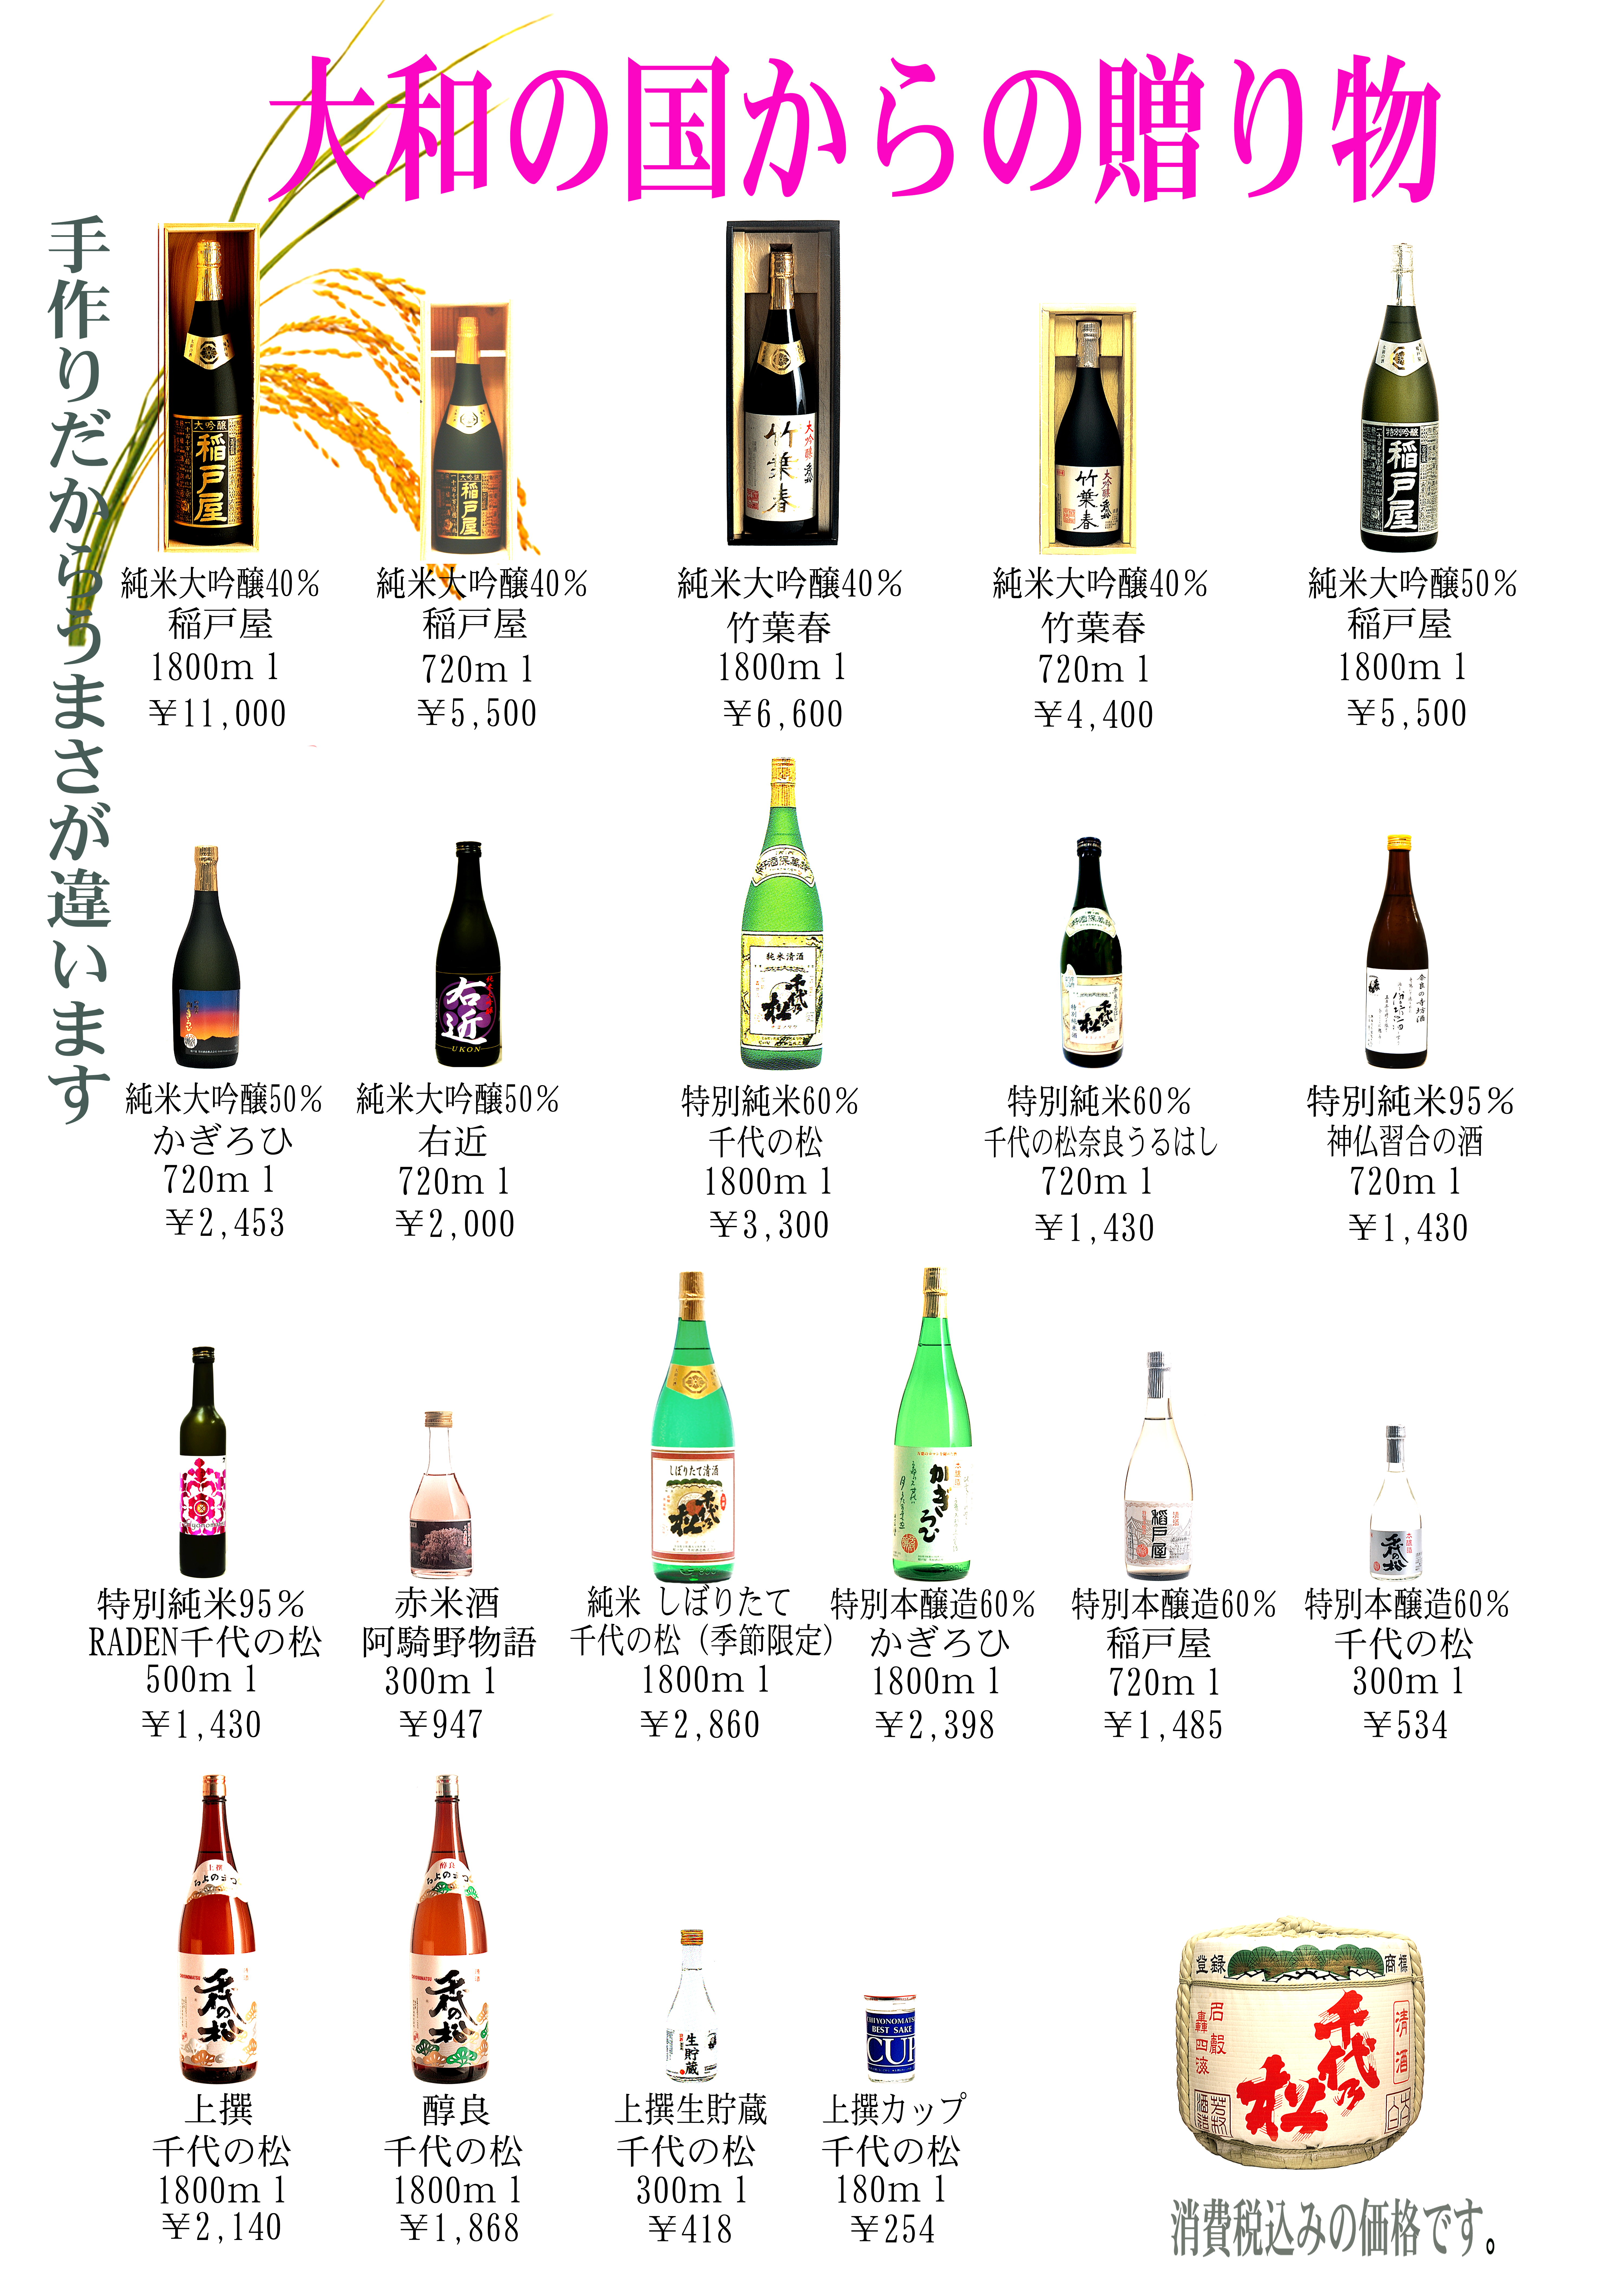 芳村酒造株式会社 -主な商品のご案内-